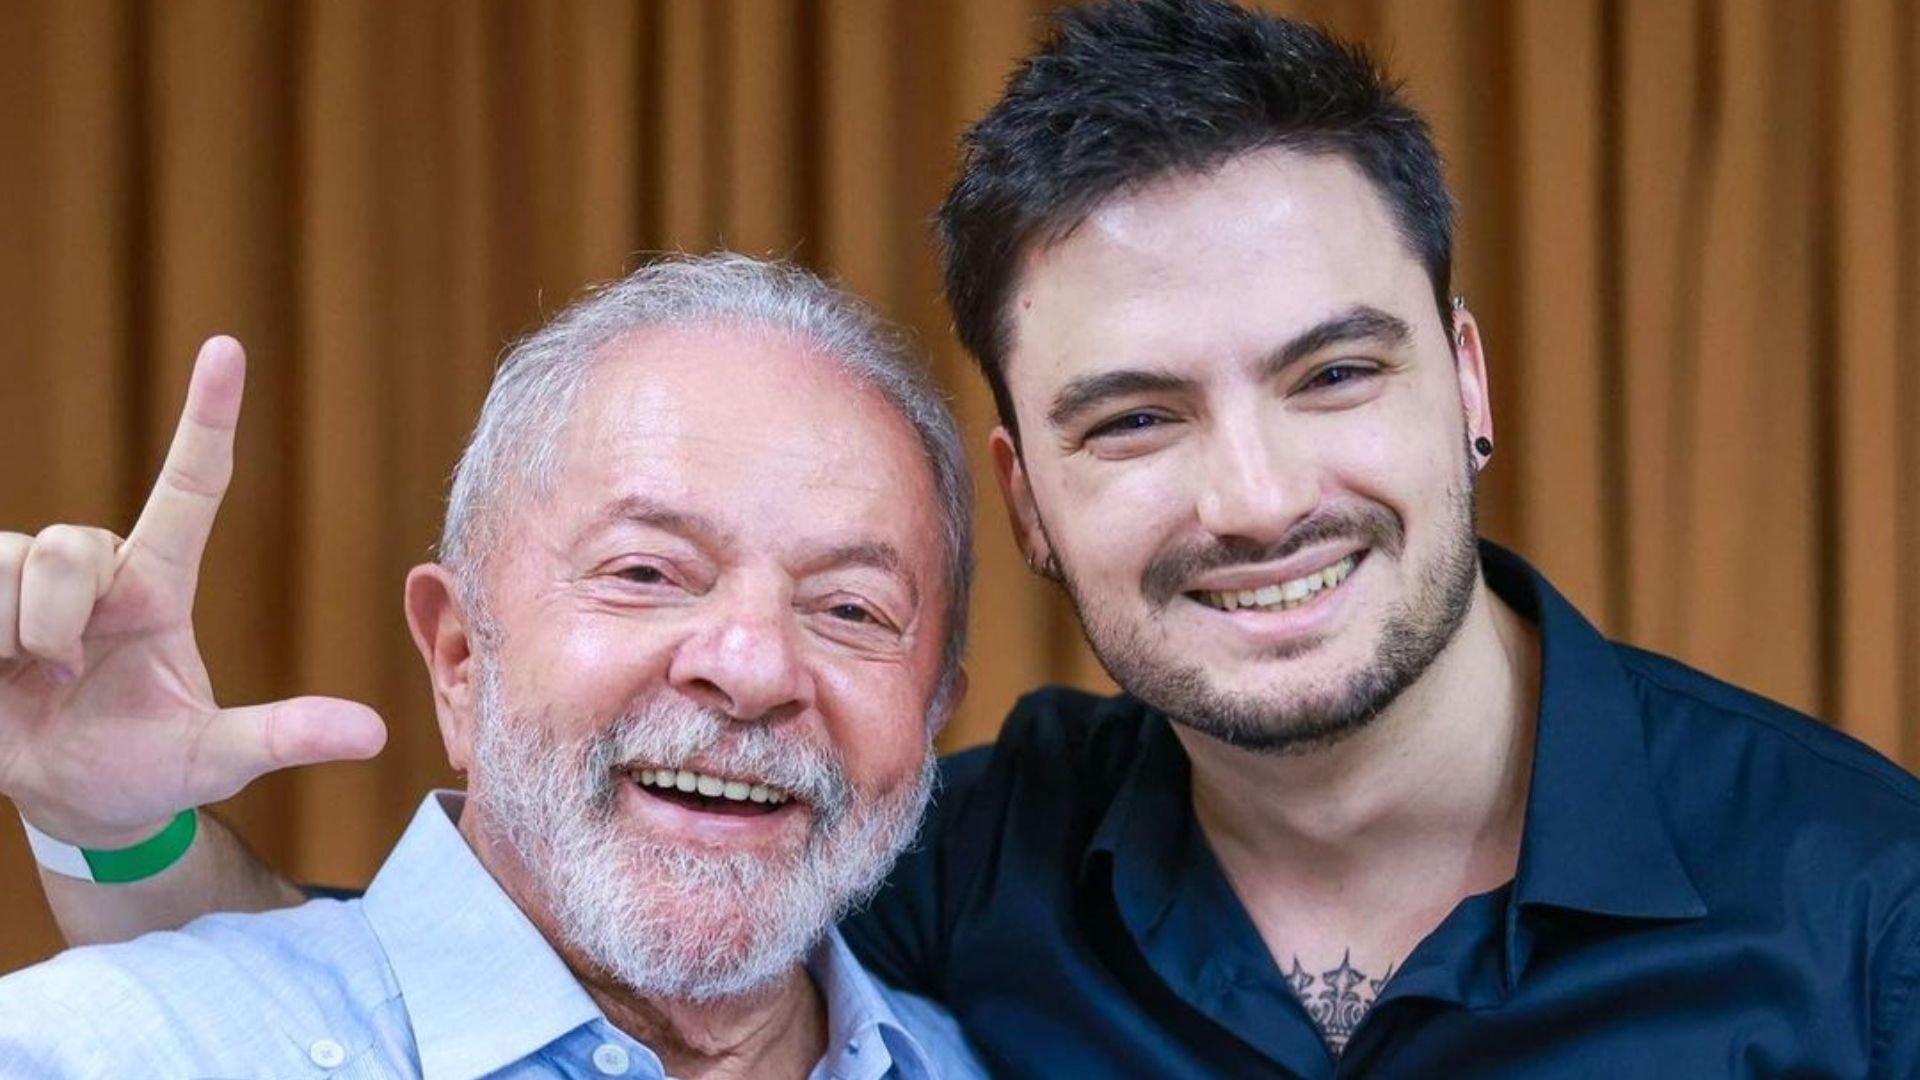 Influencers, cantores e atrizes revelaram seu voto no ex-presidente Lula; veja as declarações de alguns deles